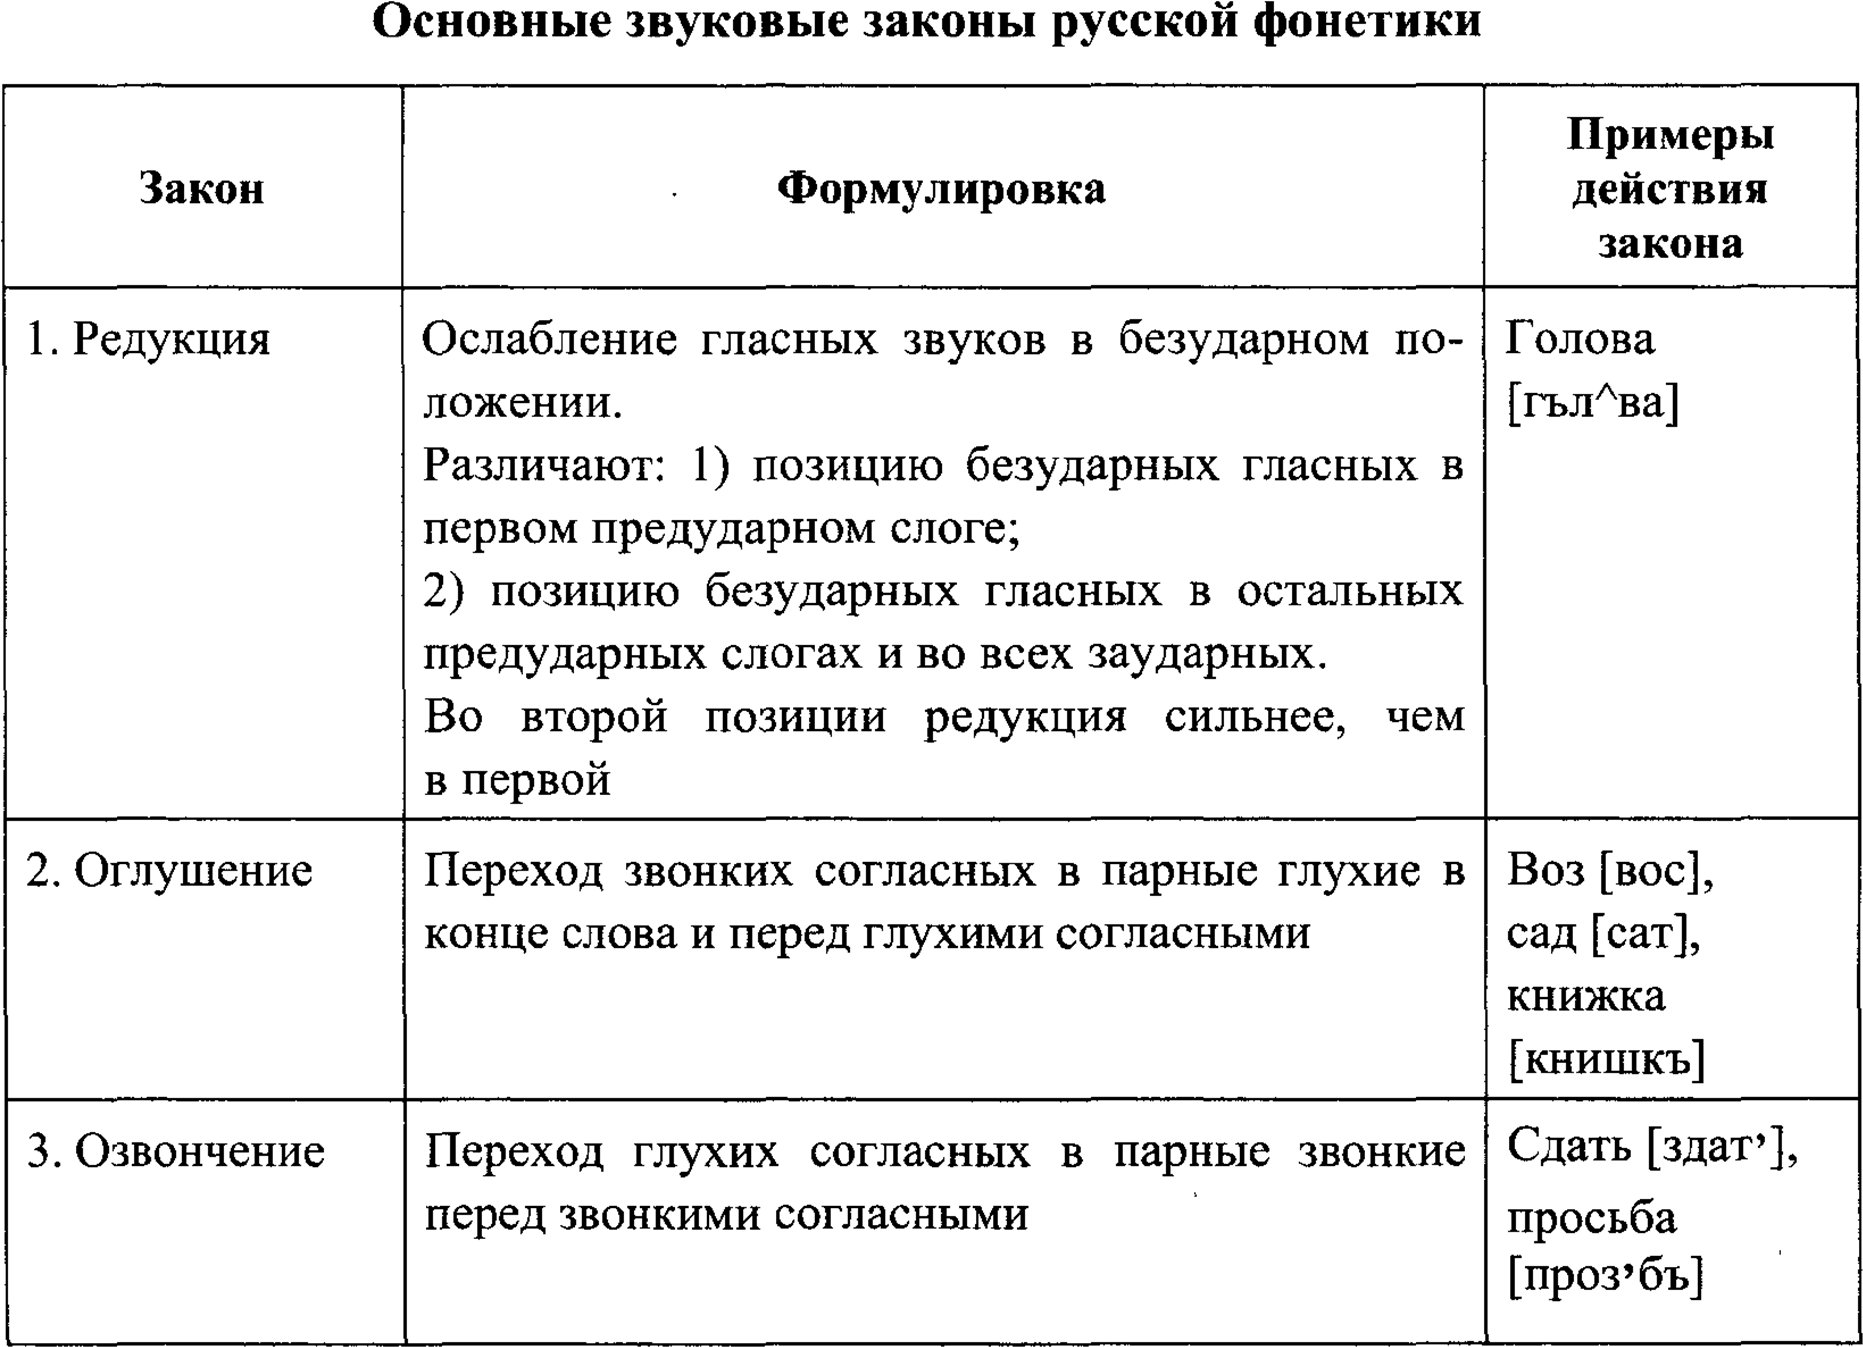 Основные звуковые законы русской фонетики